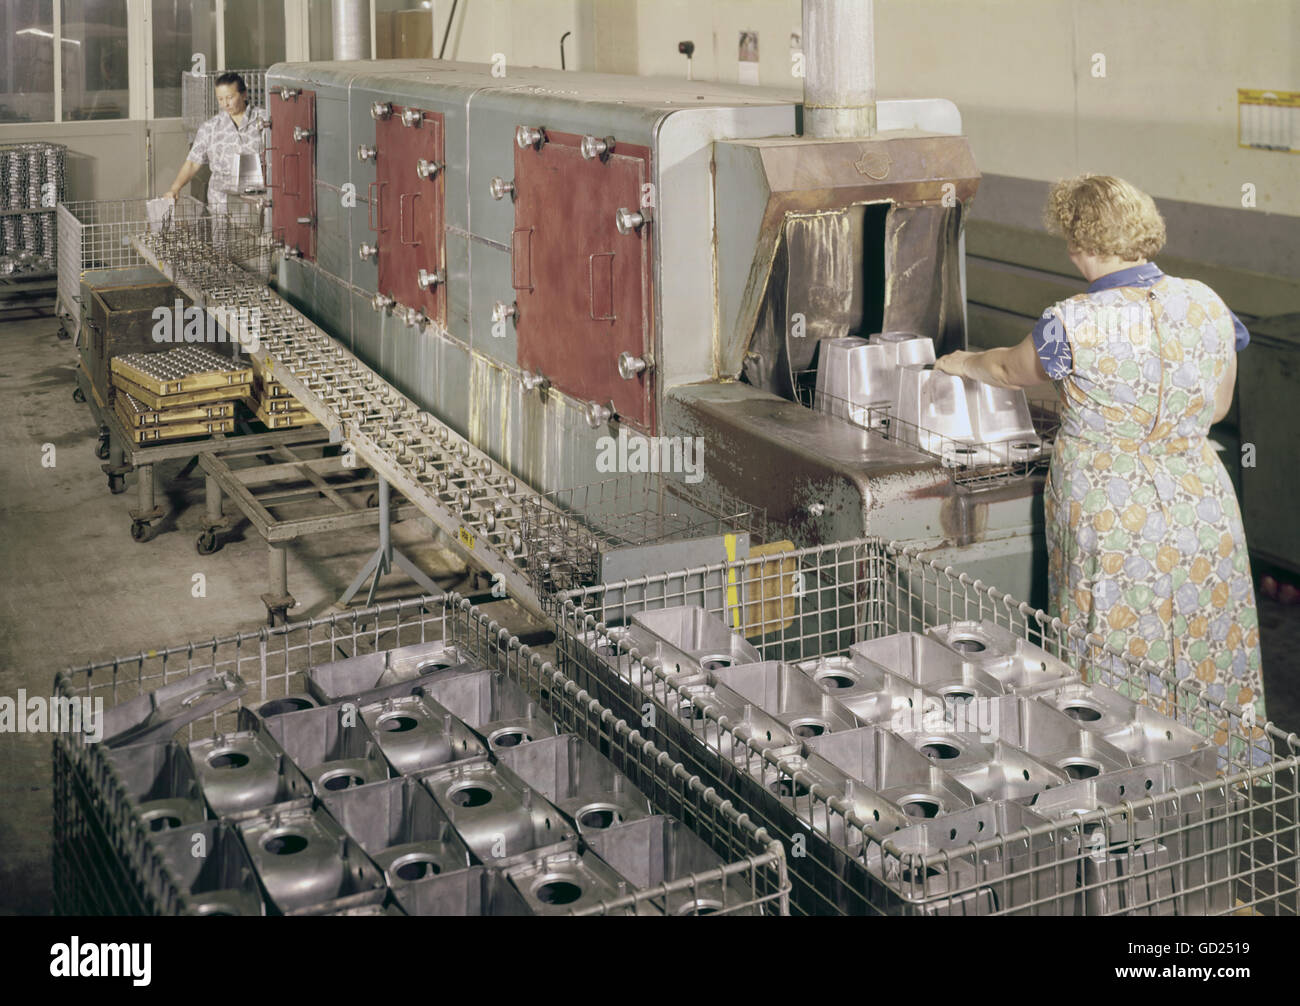 Gastronomia, servizio di lavastoviglie, donne in lavastoviglie, 1959/1960, diritti aggiuntivi-clearences-non disponibile Foto Stock